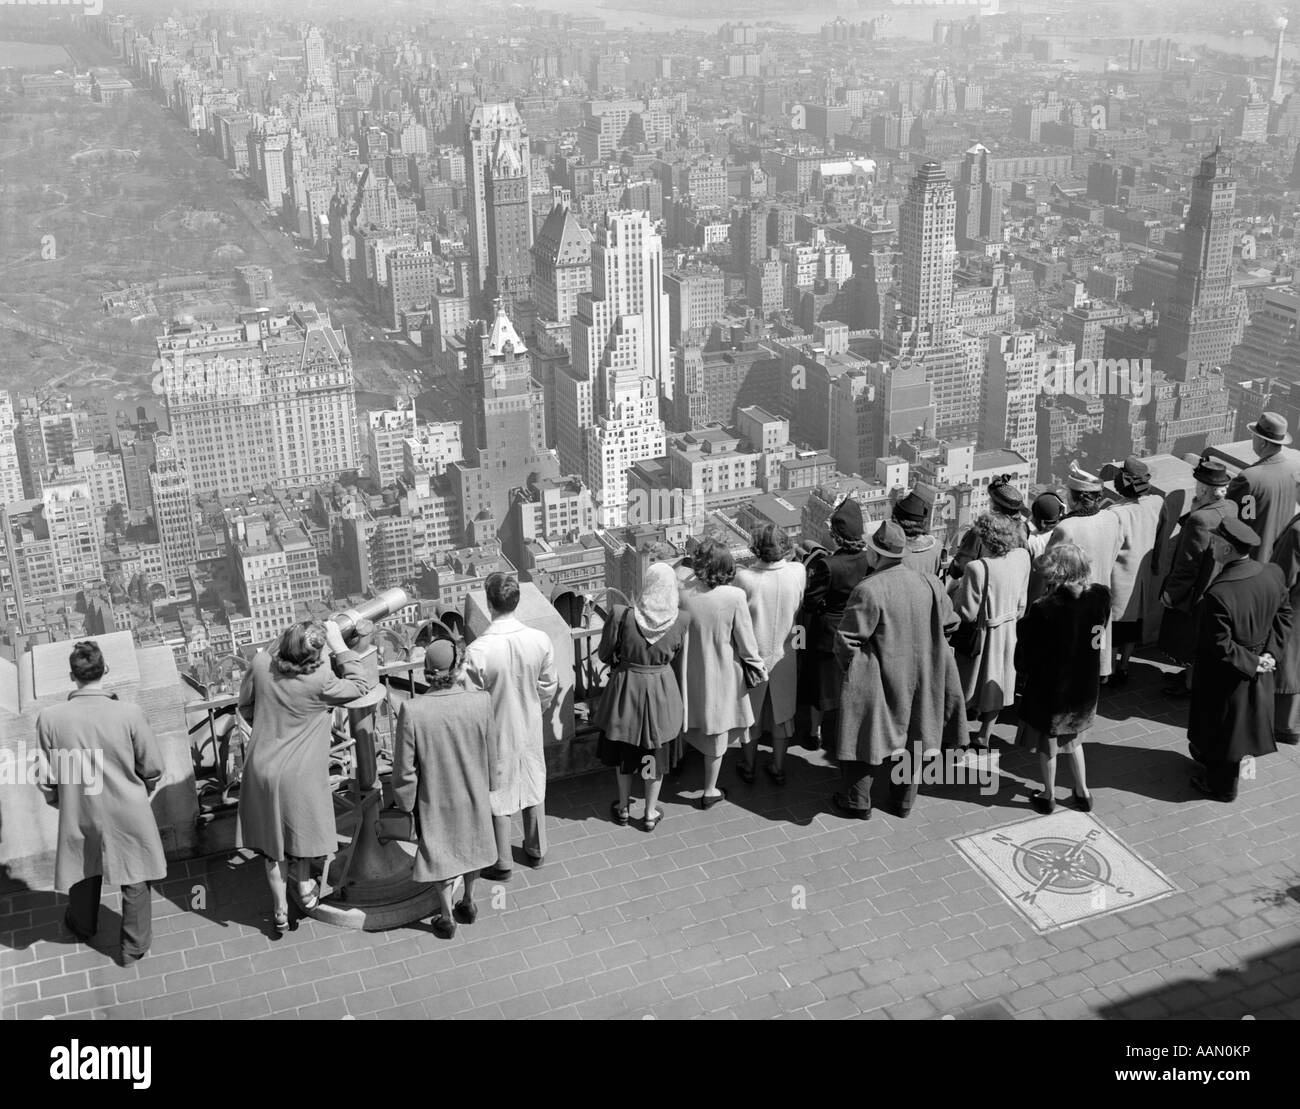 1940ER JAHRE GRUPPE VON TOURISTEN STAND AM ANFANG VON RCA BUILDING LOOKING OUT ÜBER STADT Stockfoto